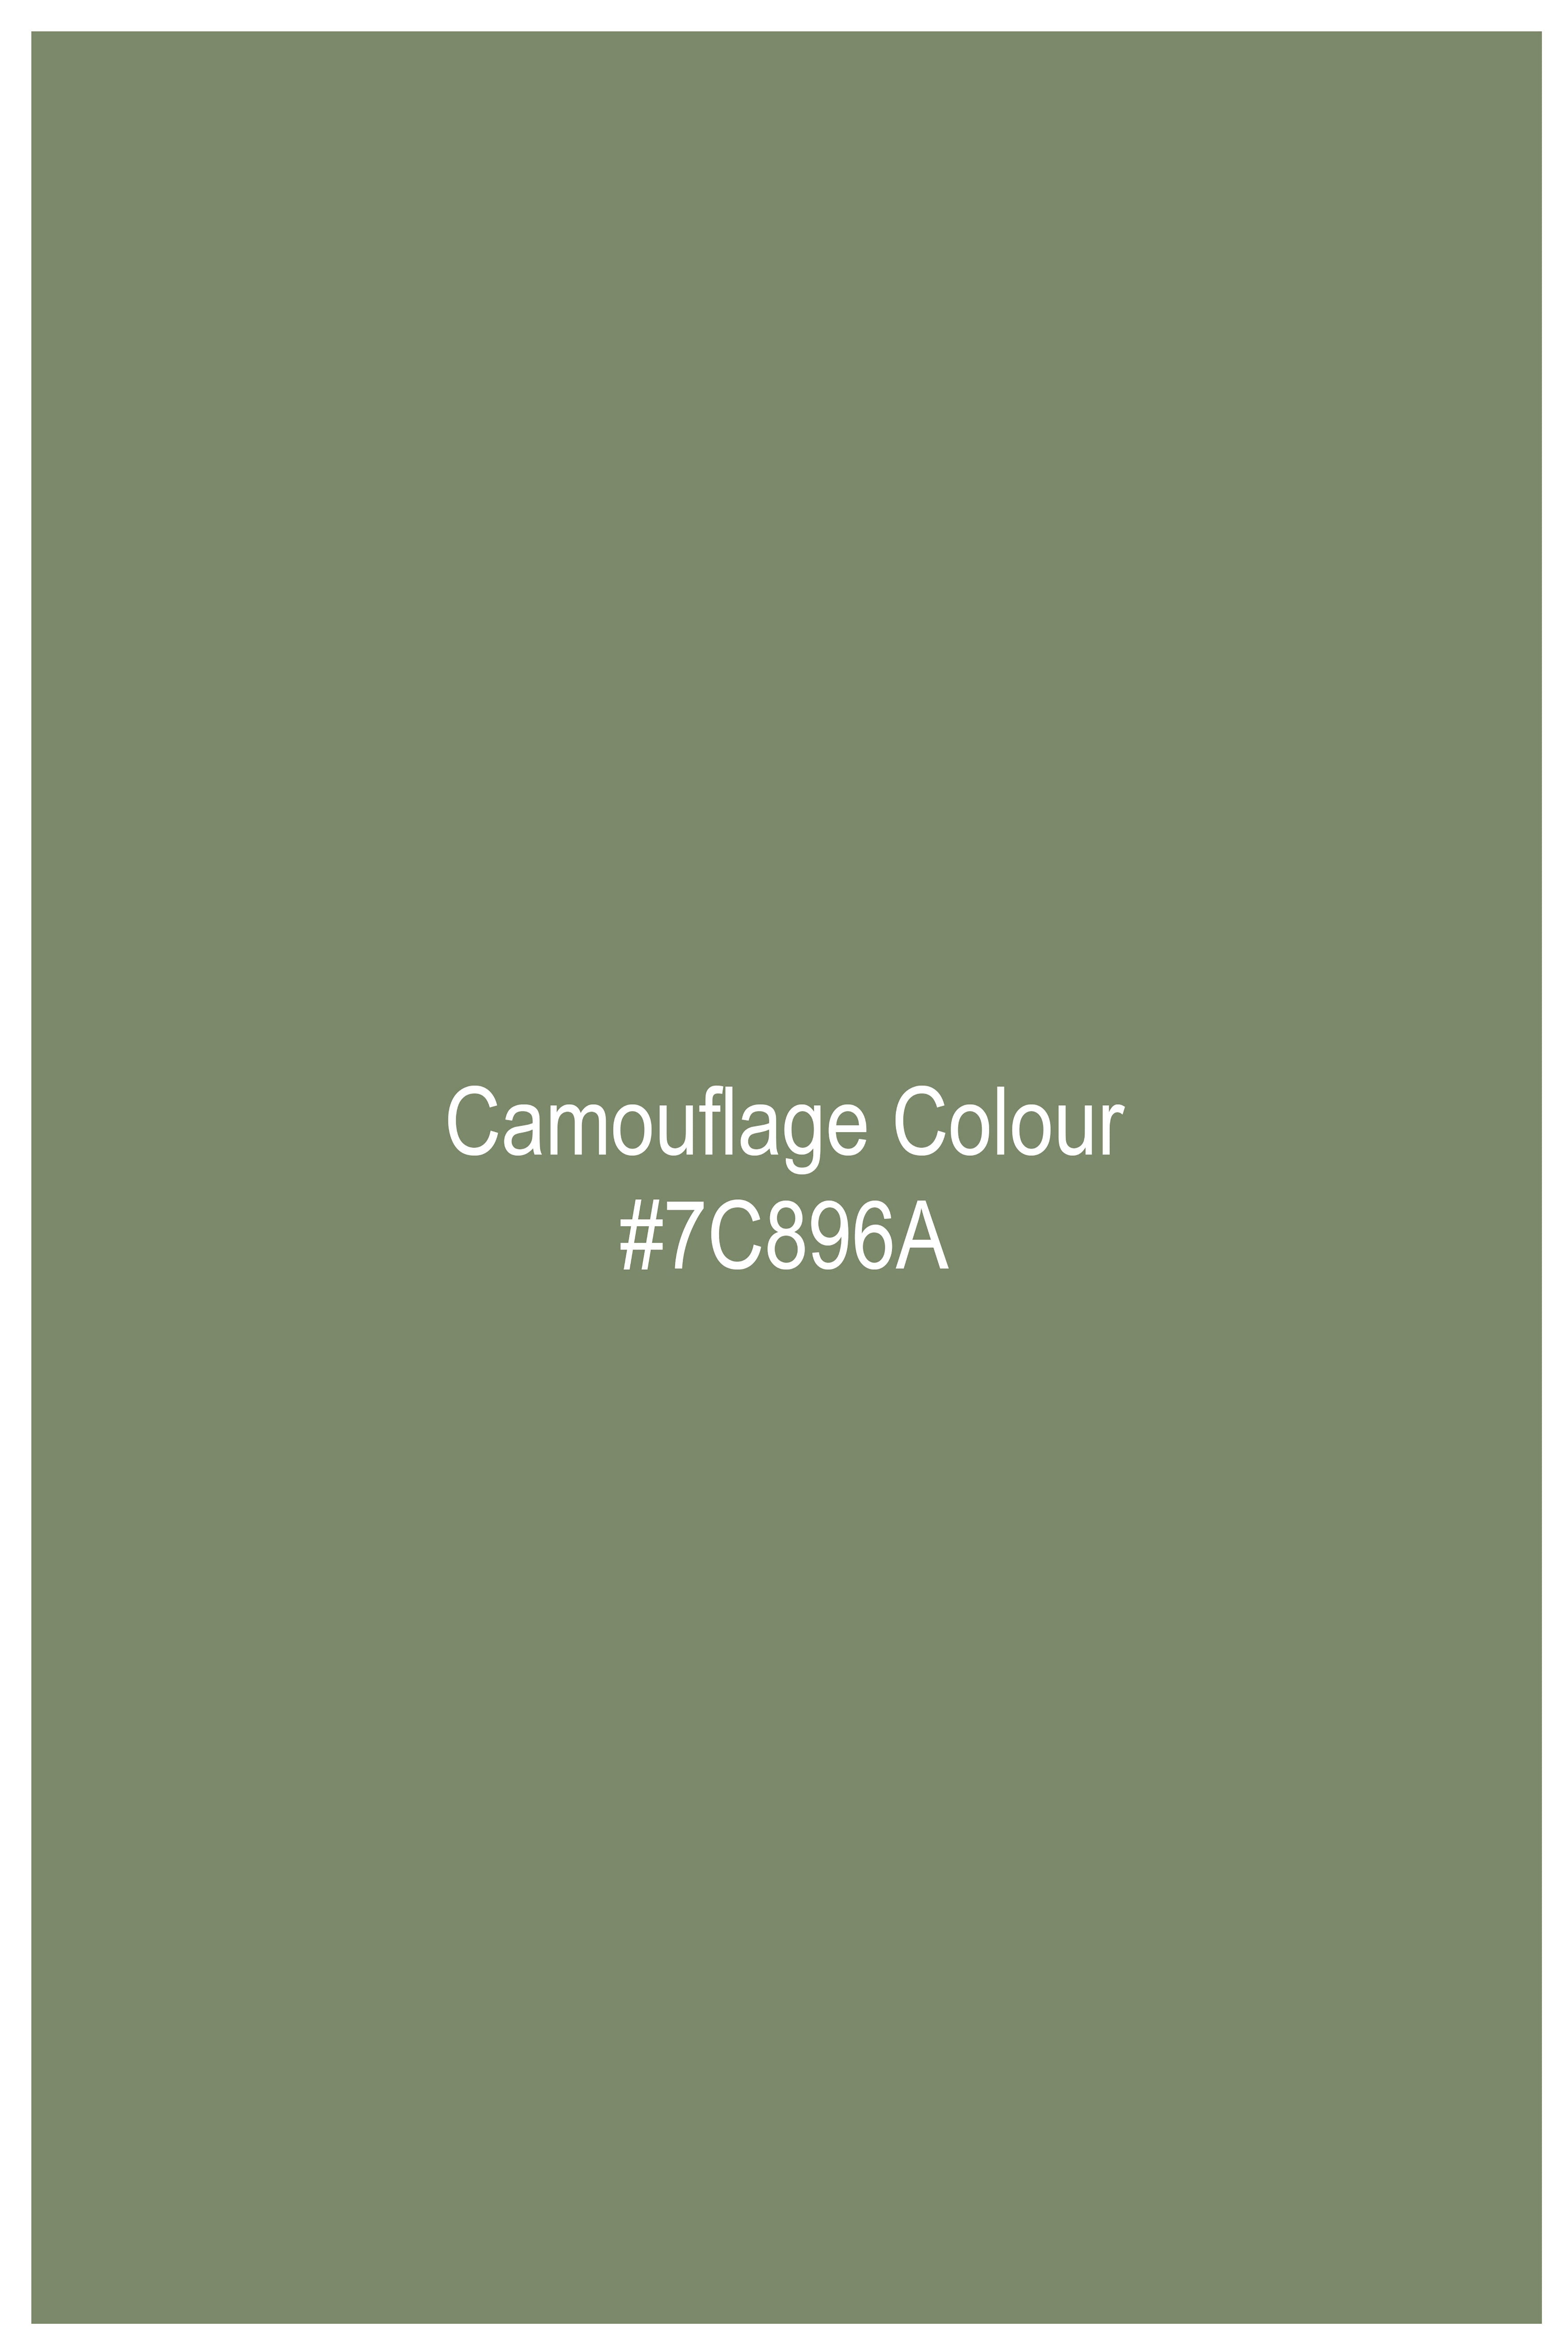 Camouflage Green Luxurious Linen Designer Shirt